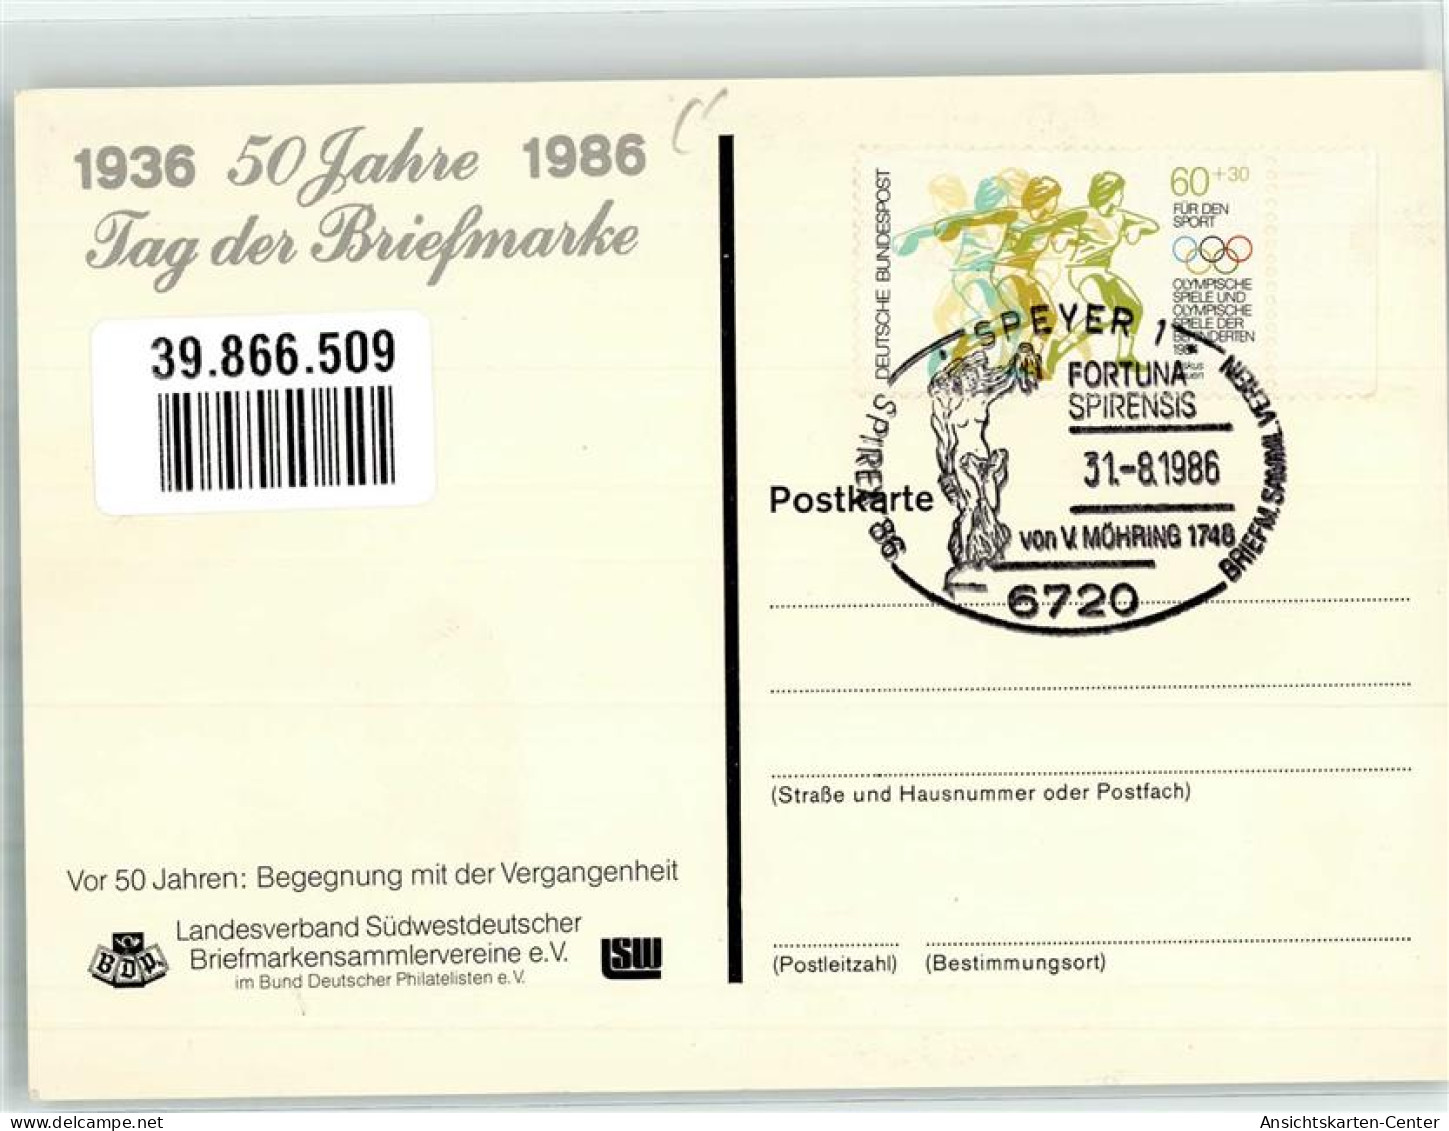 39866509 - Postkutsche Flugzeug Frau Sonderstempel 1986 - Stamps (pictures)